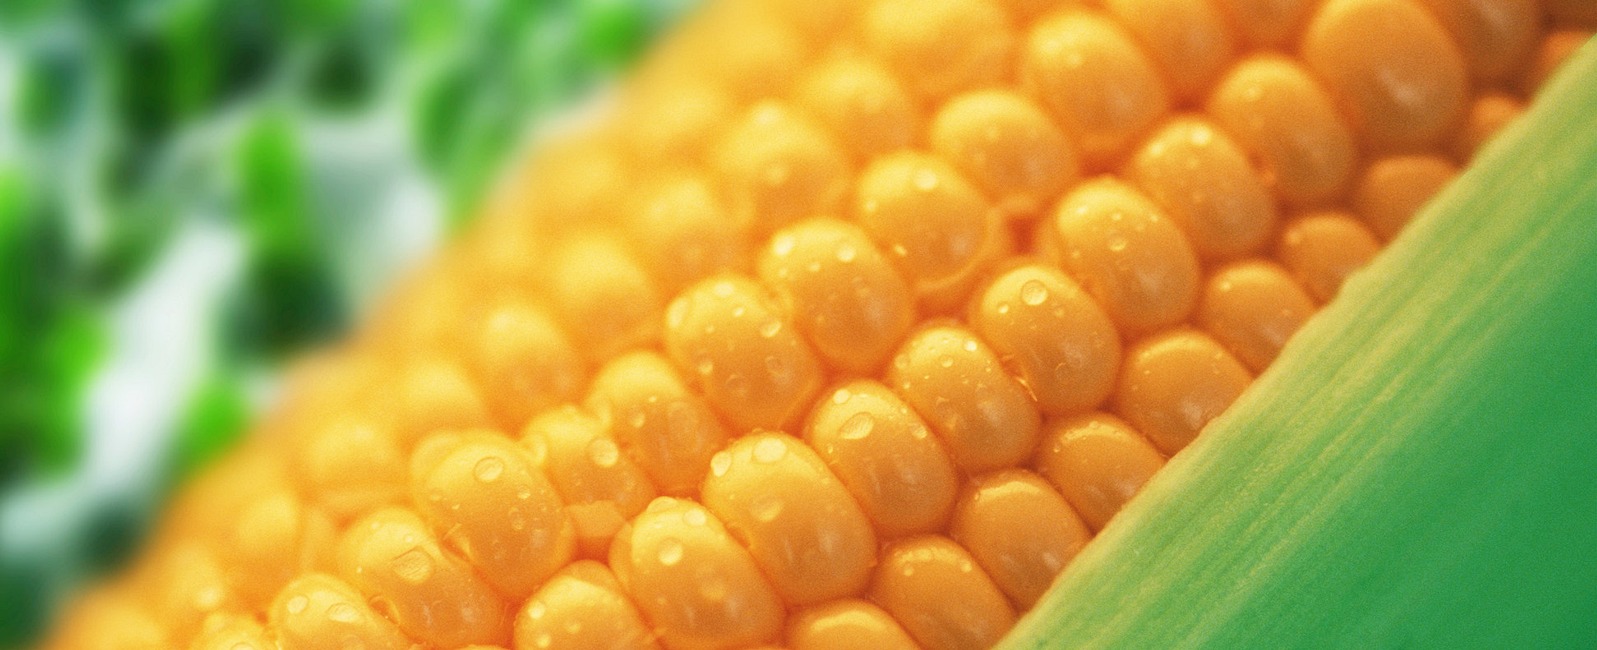 Come influenzare la qualità del mais